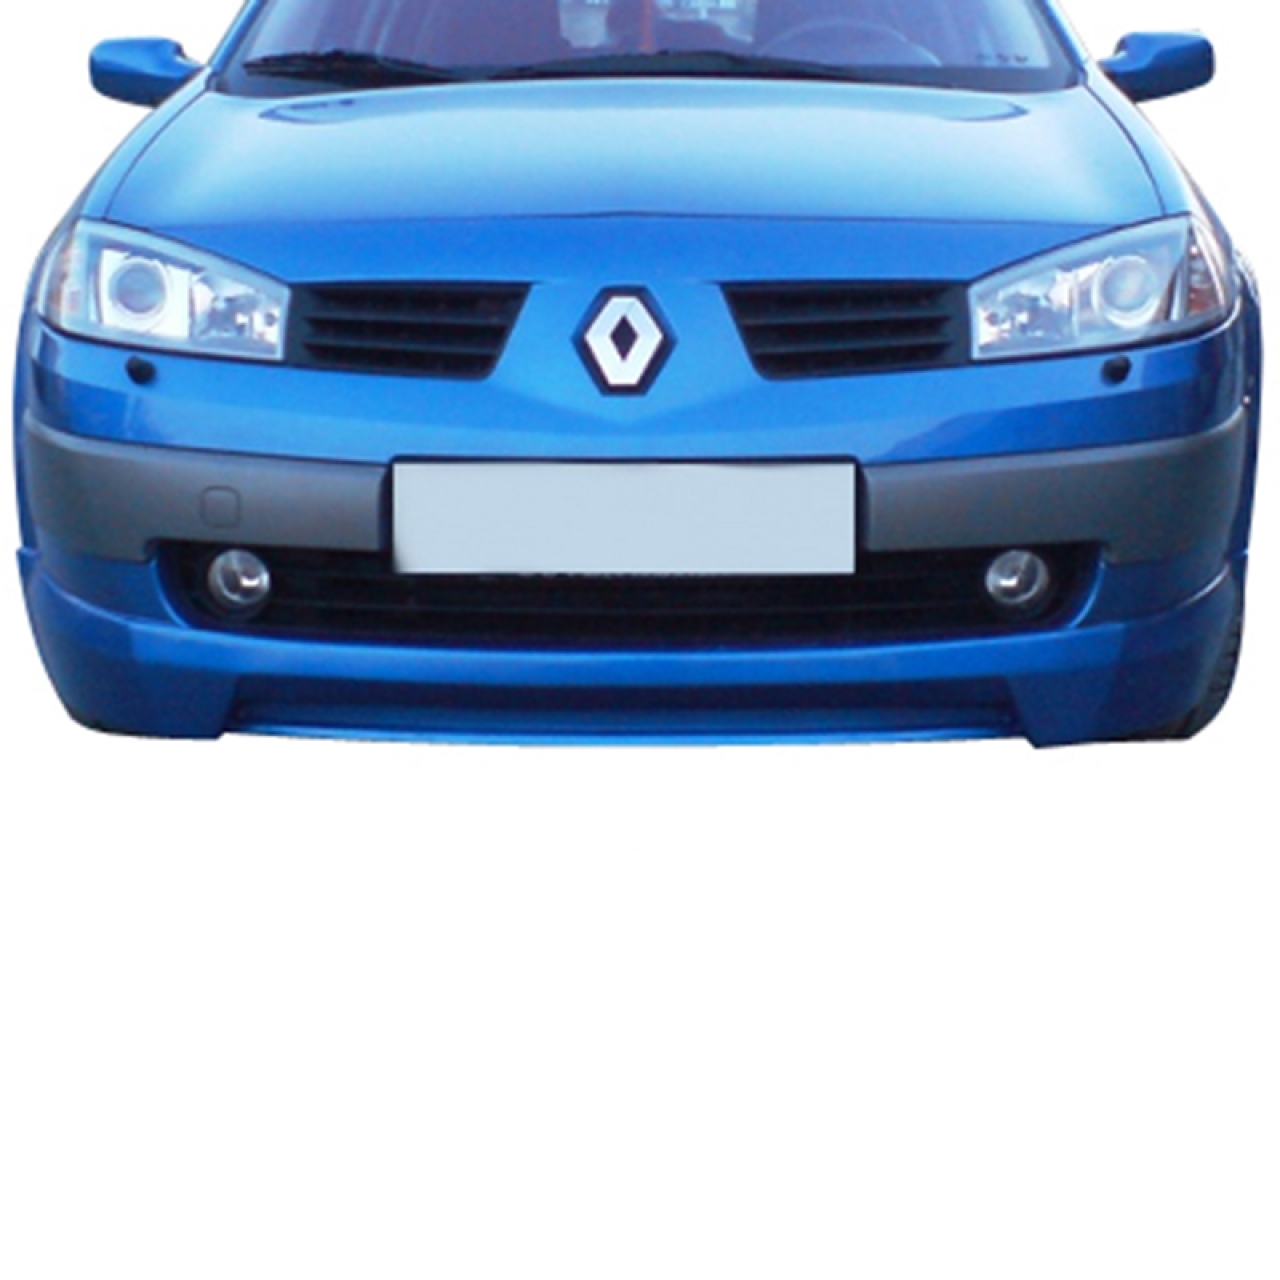 Renault Megane 2 HB Ön Tampon Eki Boyalı Fiyat ve Modelleri